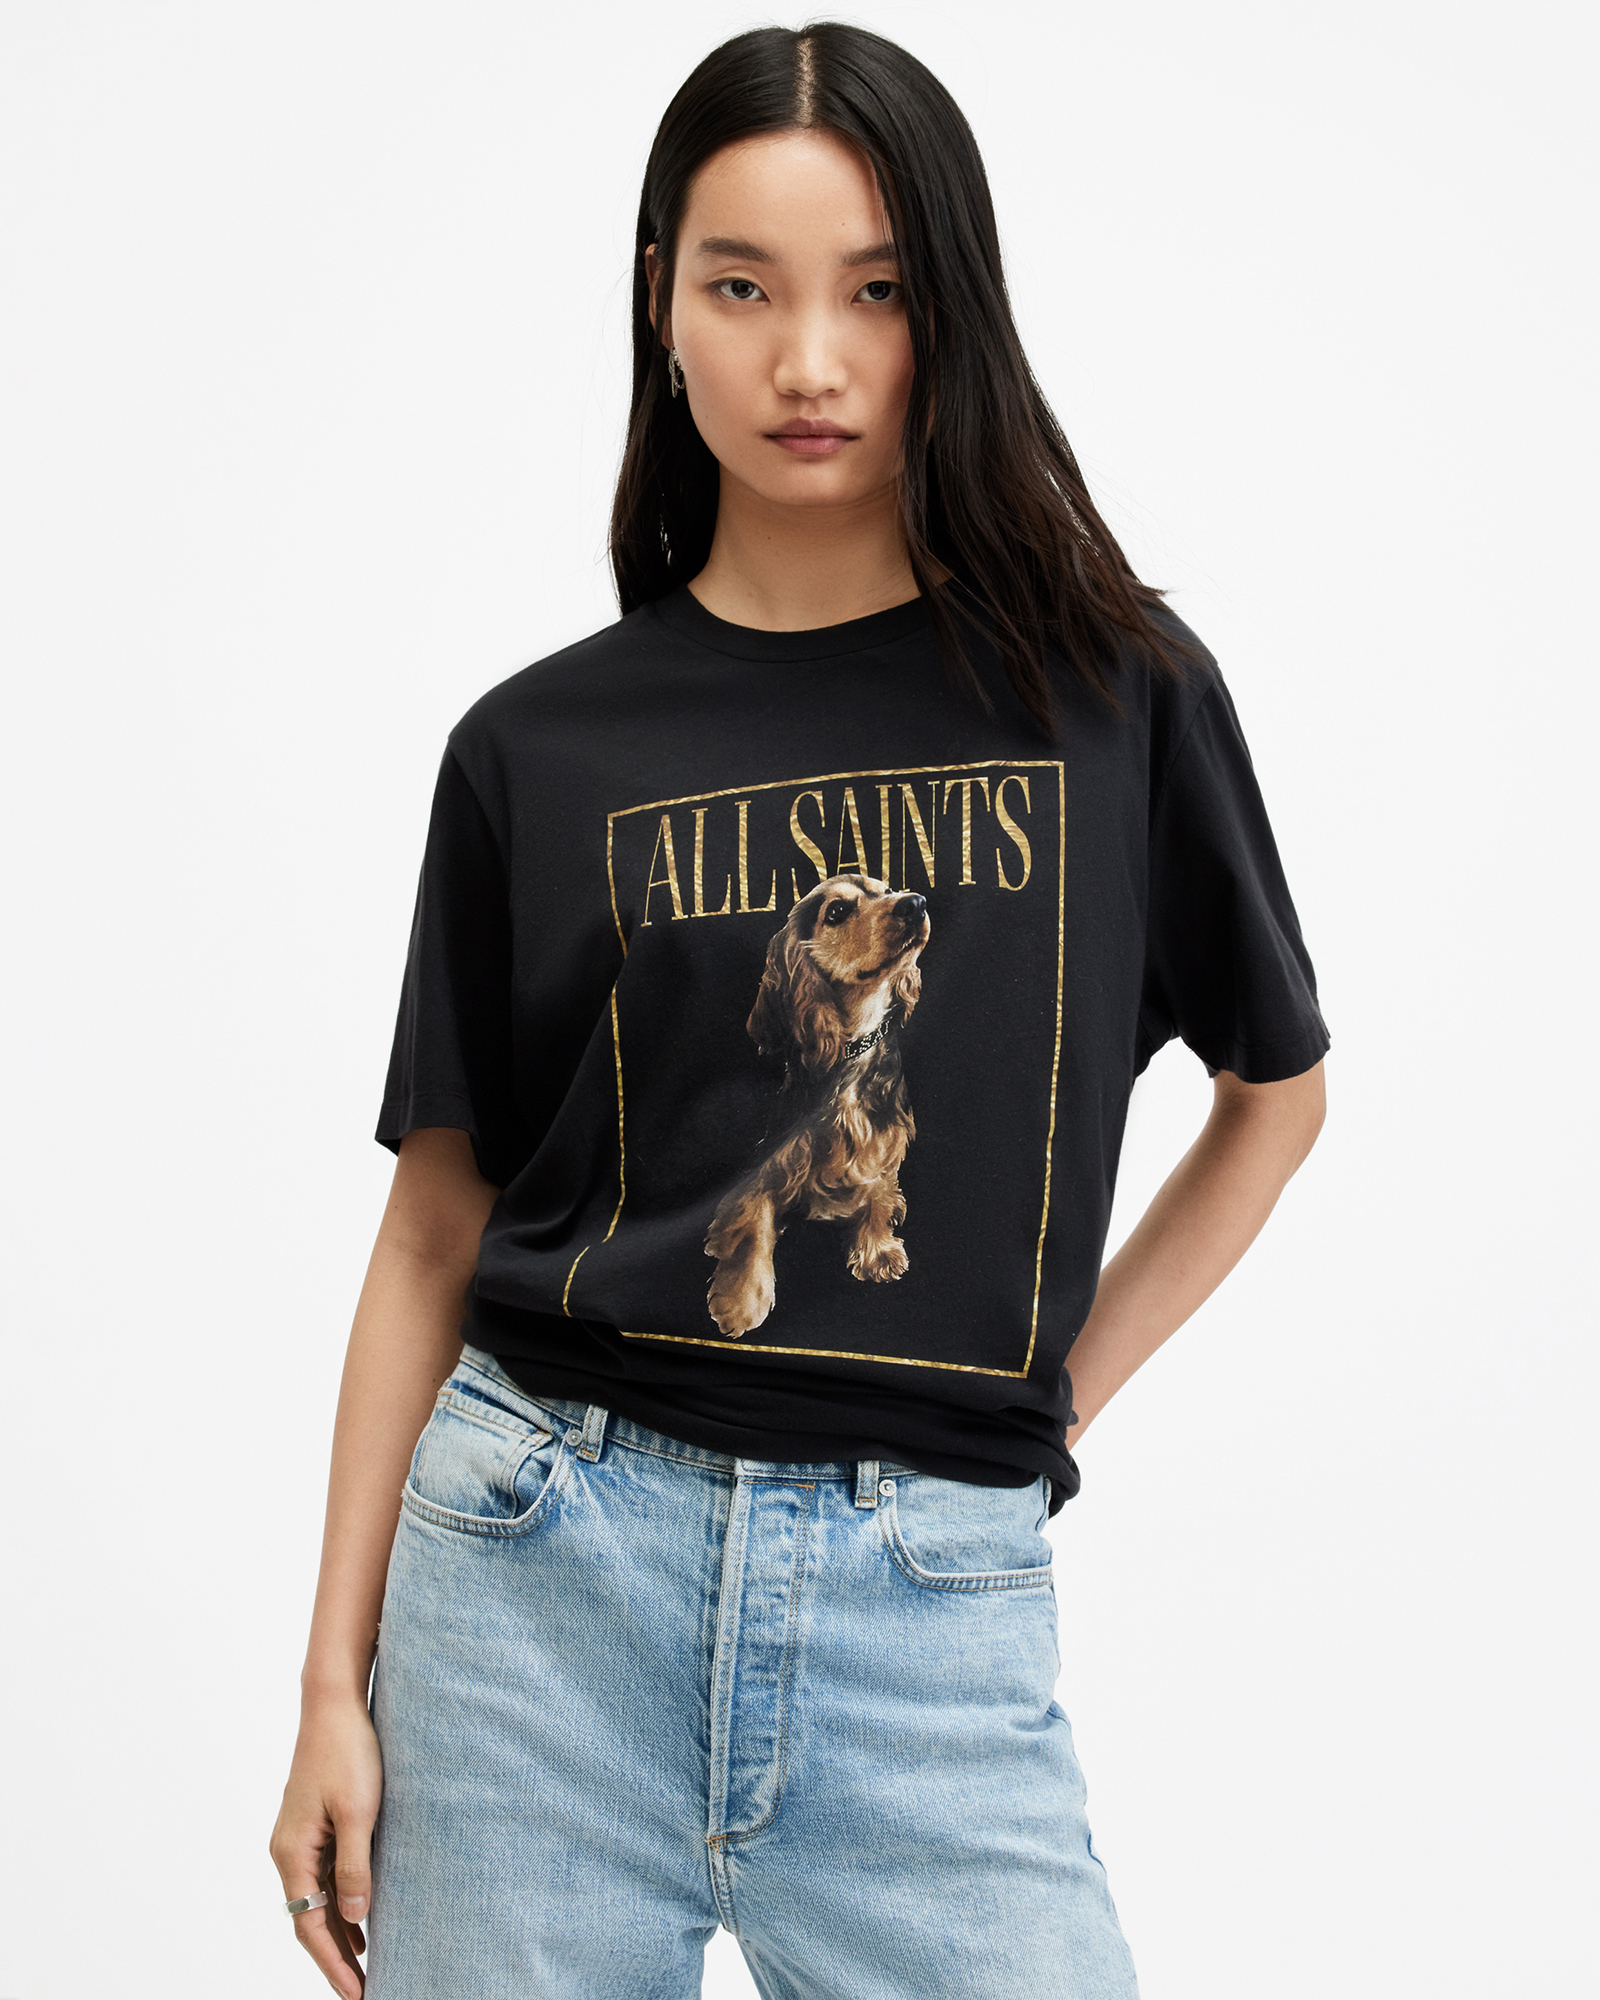 AllSaints Pepper Dog Artwork Oversized T-Shirt,, Black